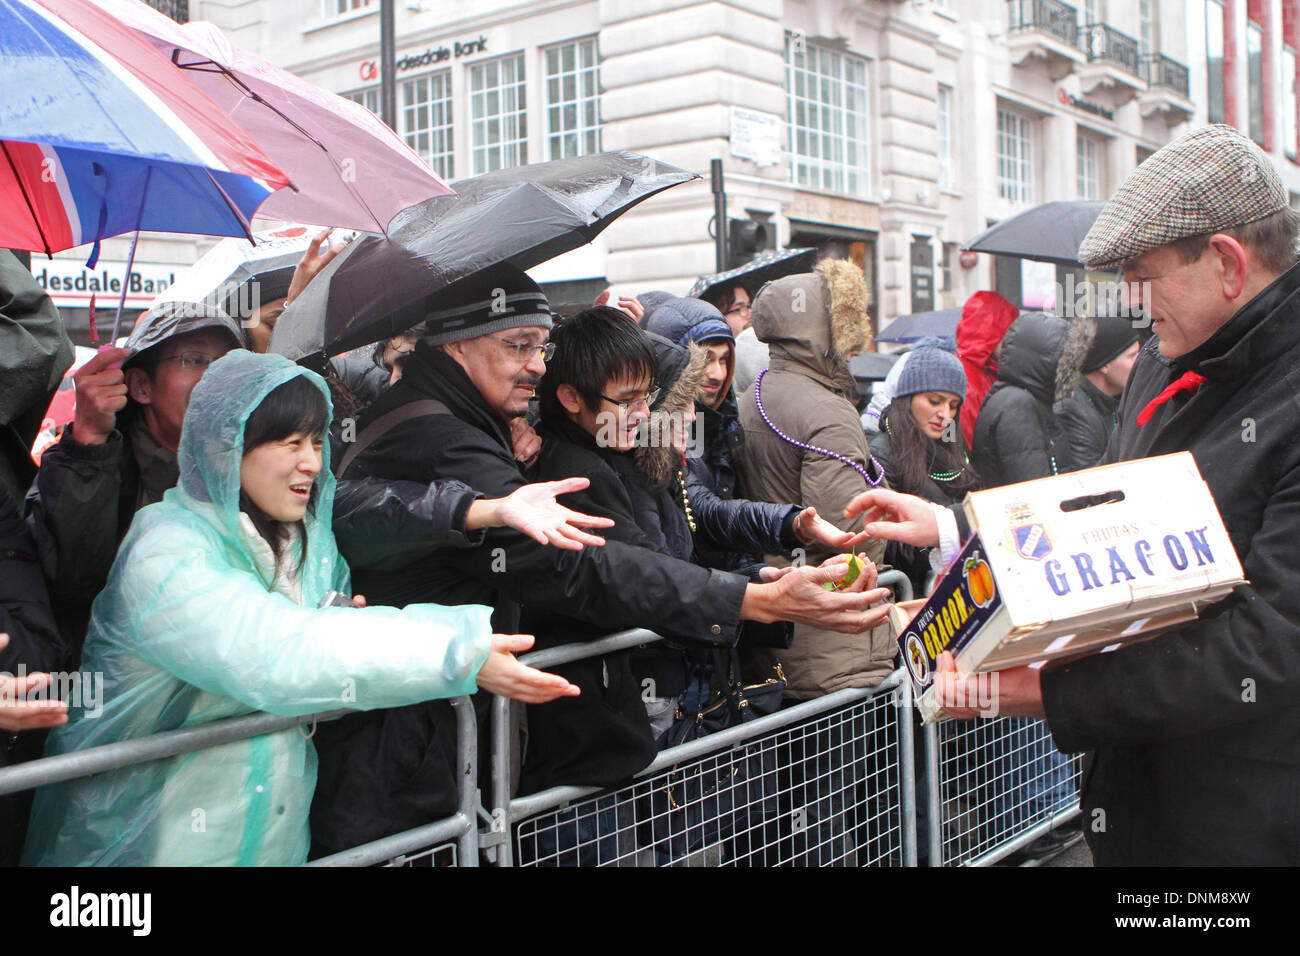 Londres, Reino Unido, 1 de enero de 2014,entregando satsumas en Londres el día de Año Nuevo de 2014 Desfile de crédito: Keith Larby/Alamy Live News Foto de stock